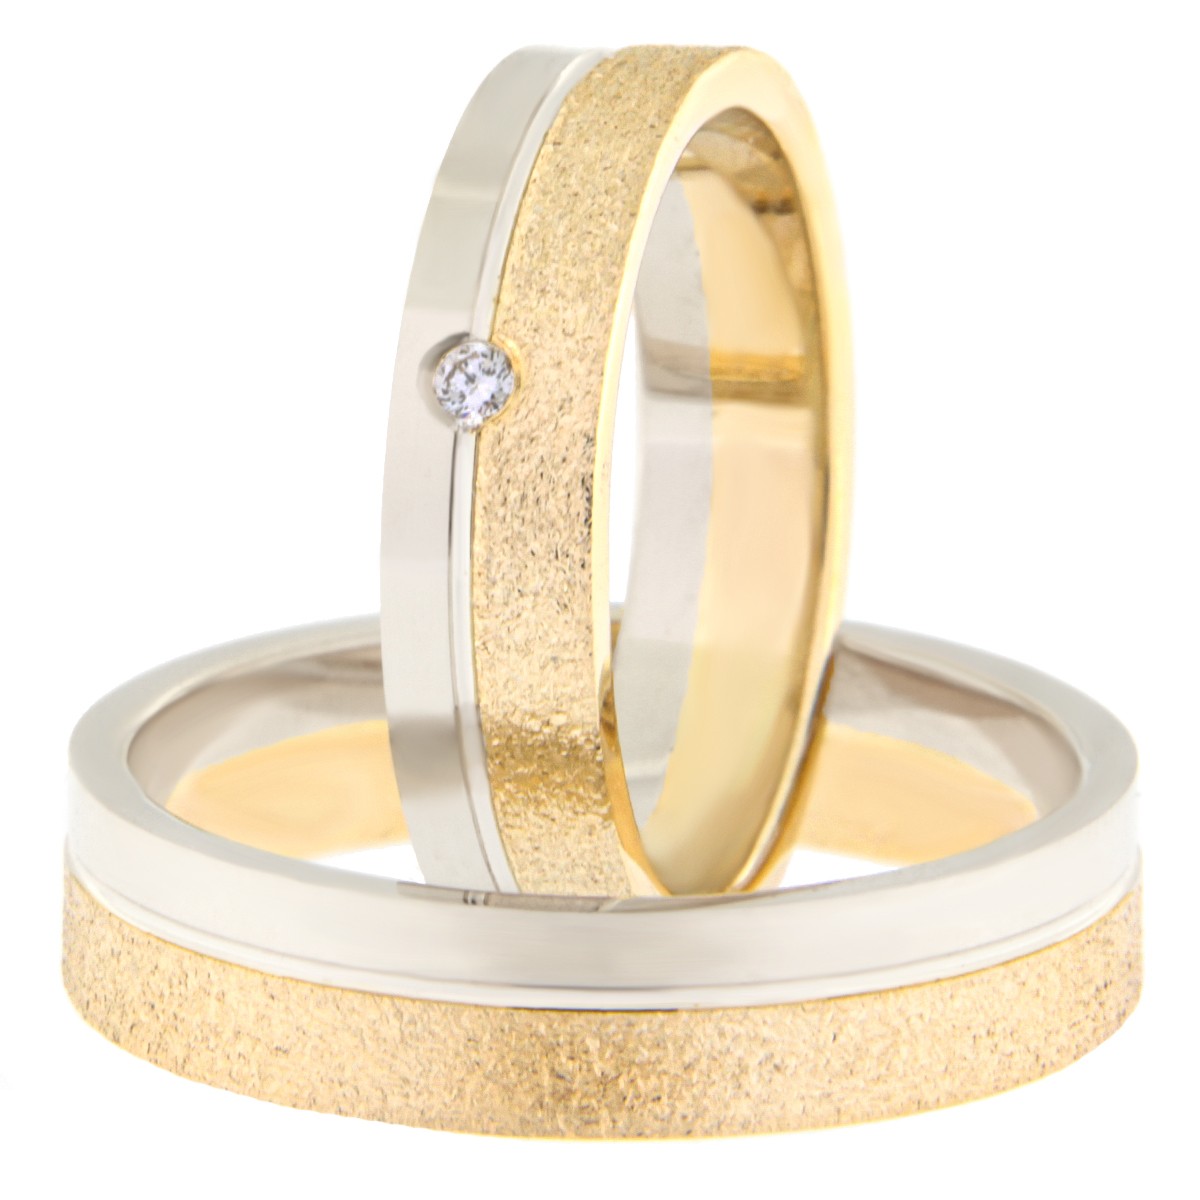 Kullast abielusõrmus teemantiga Kood: Rn0152-5-1/3vl-2/3km4-1k